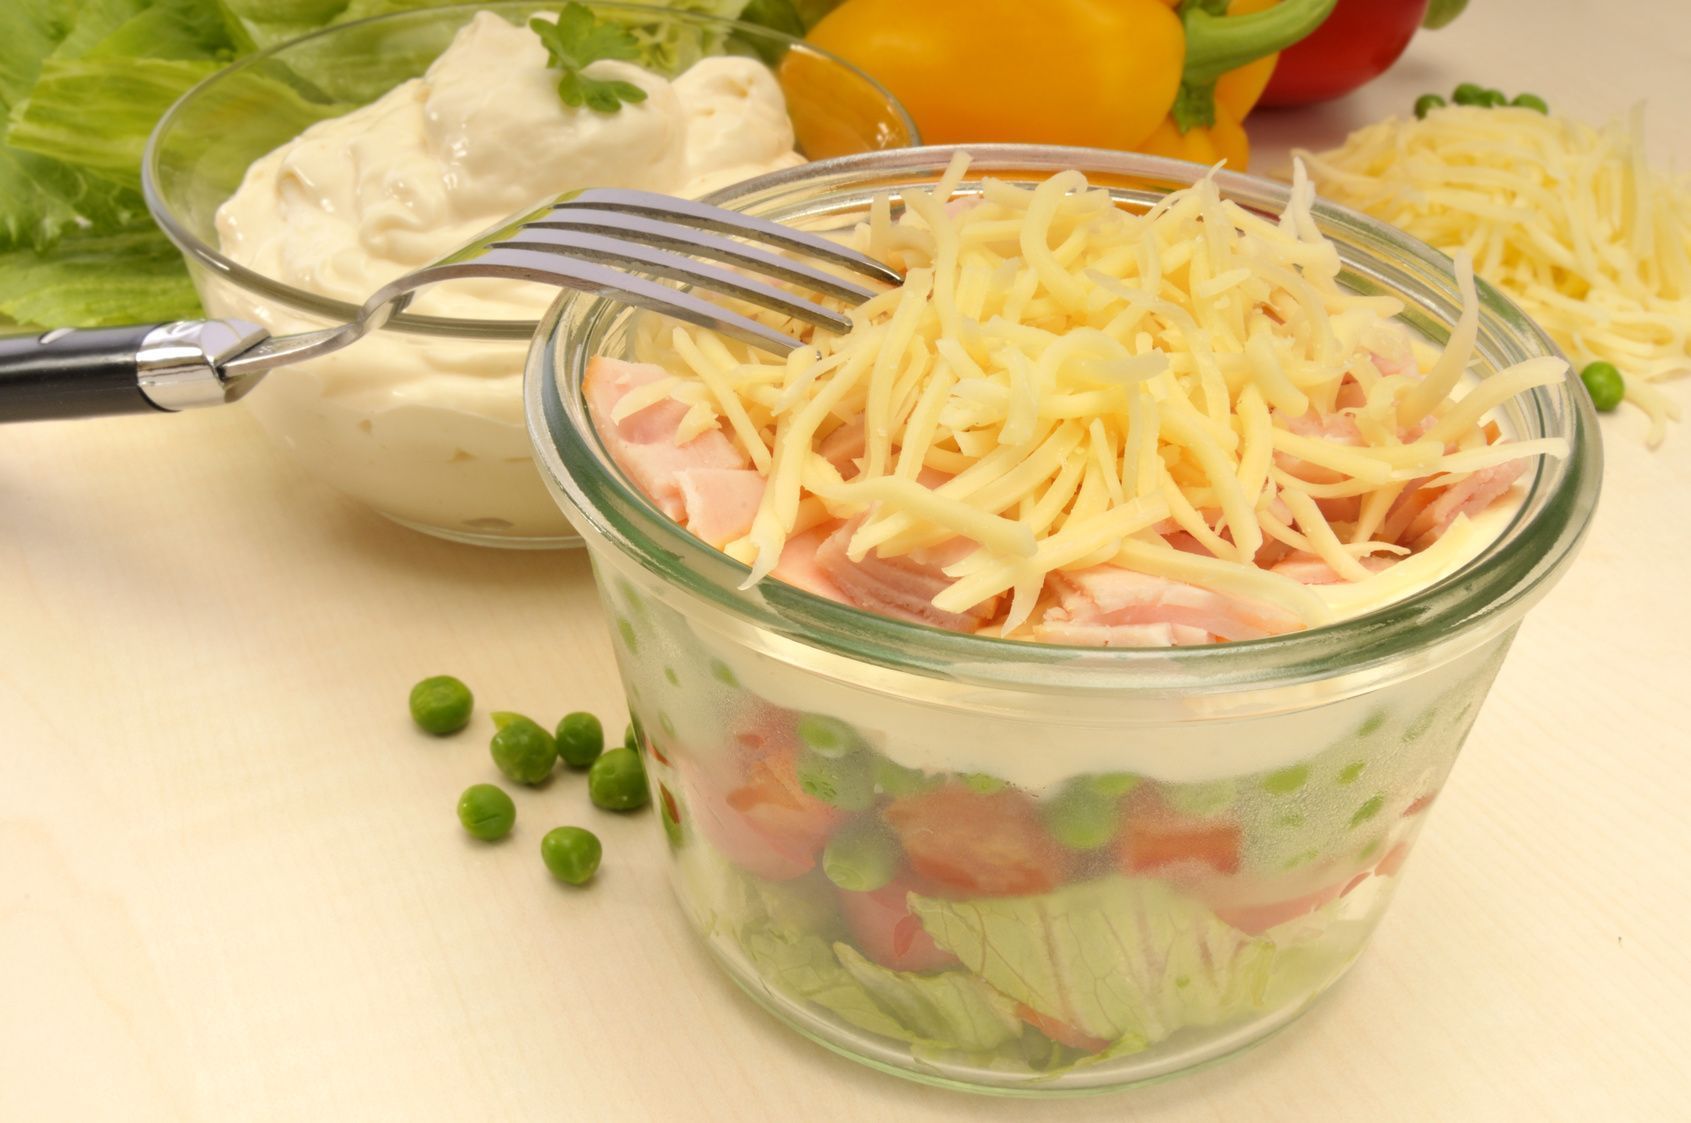 Rezepte für Schichtsalate gibt es viele. Egal in welcher Form – sie bereichern jeden Tisch mit ihrer Optik.